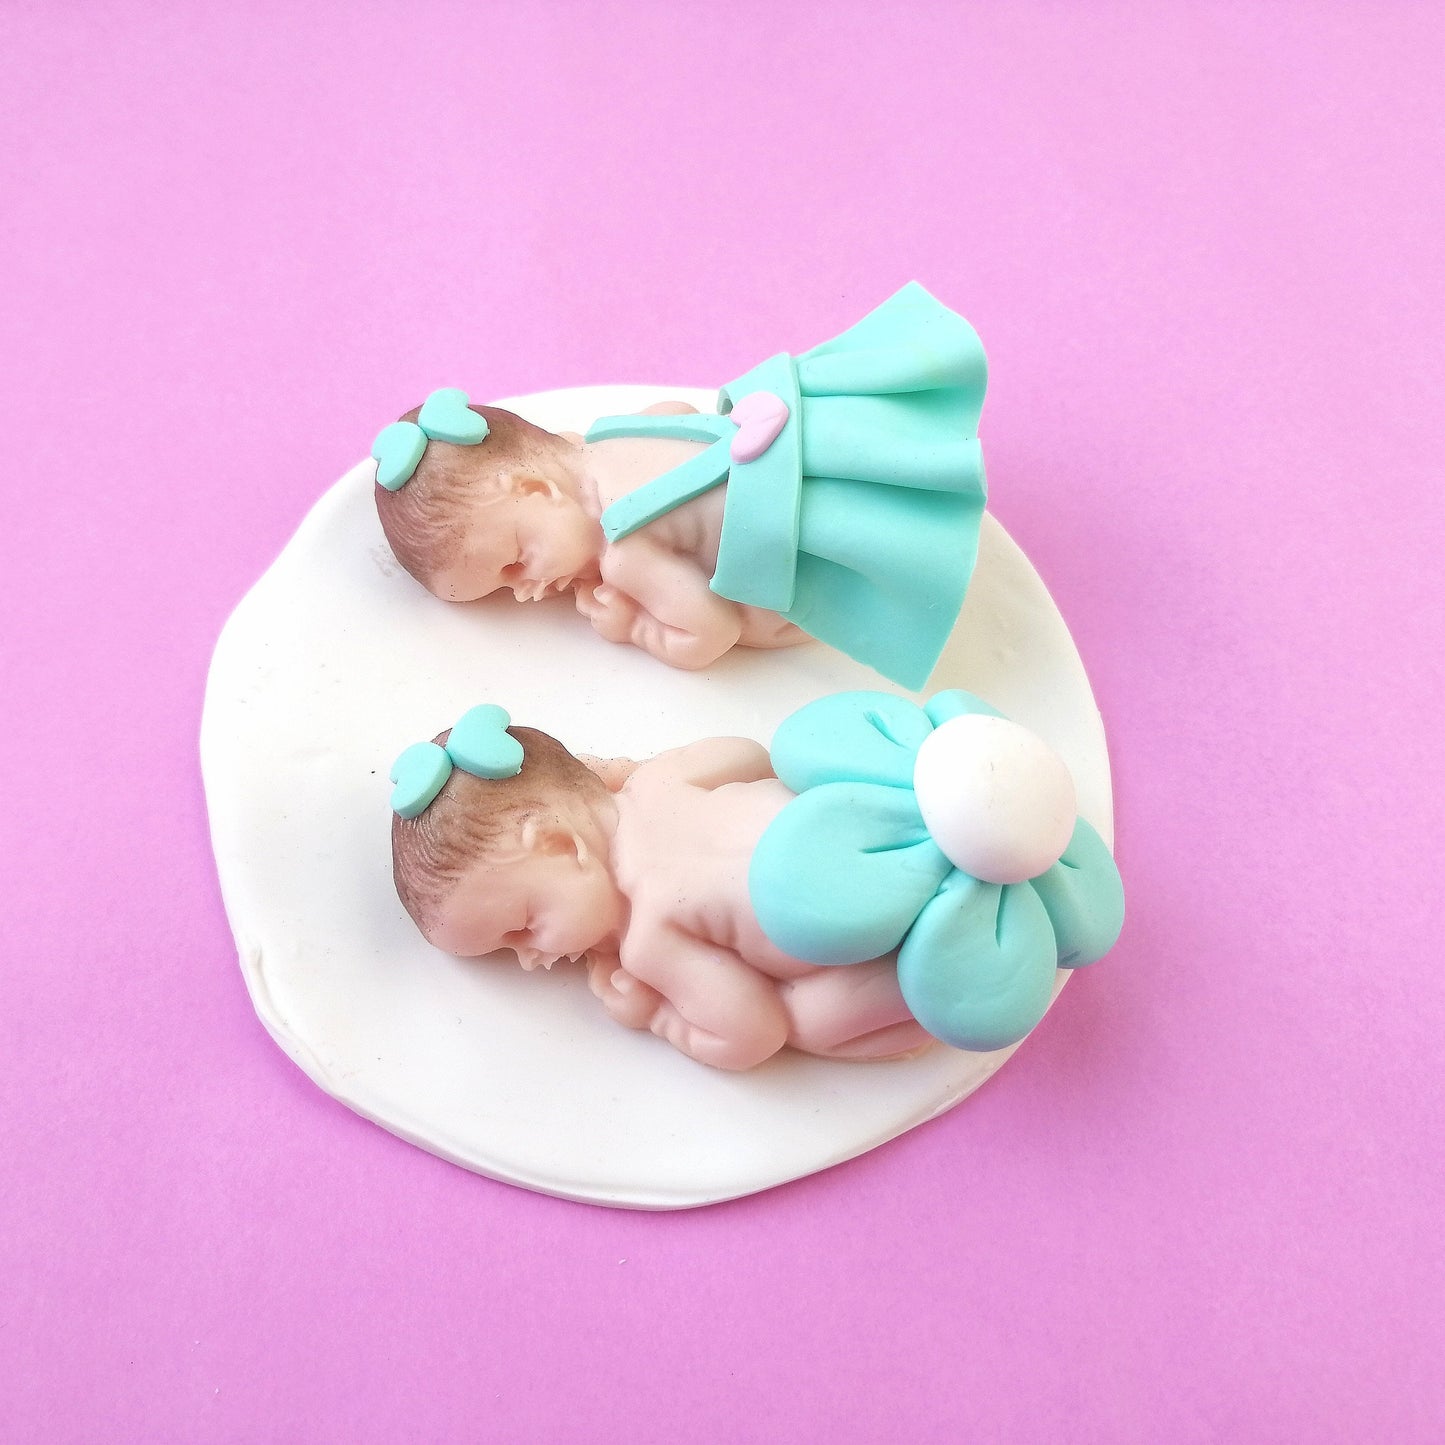 Bomboniera Nascita e Battesimo bambine gemelle colorate BIMBE in fimo con base bianca 10cm x 10cm con nome personalizzato fatto a mano